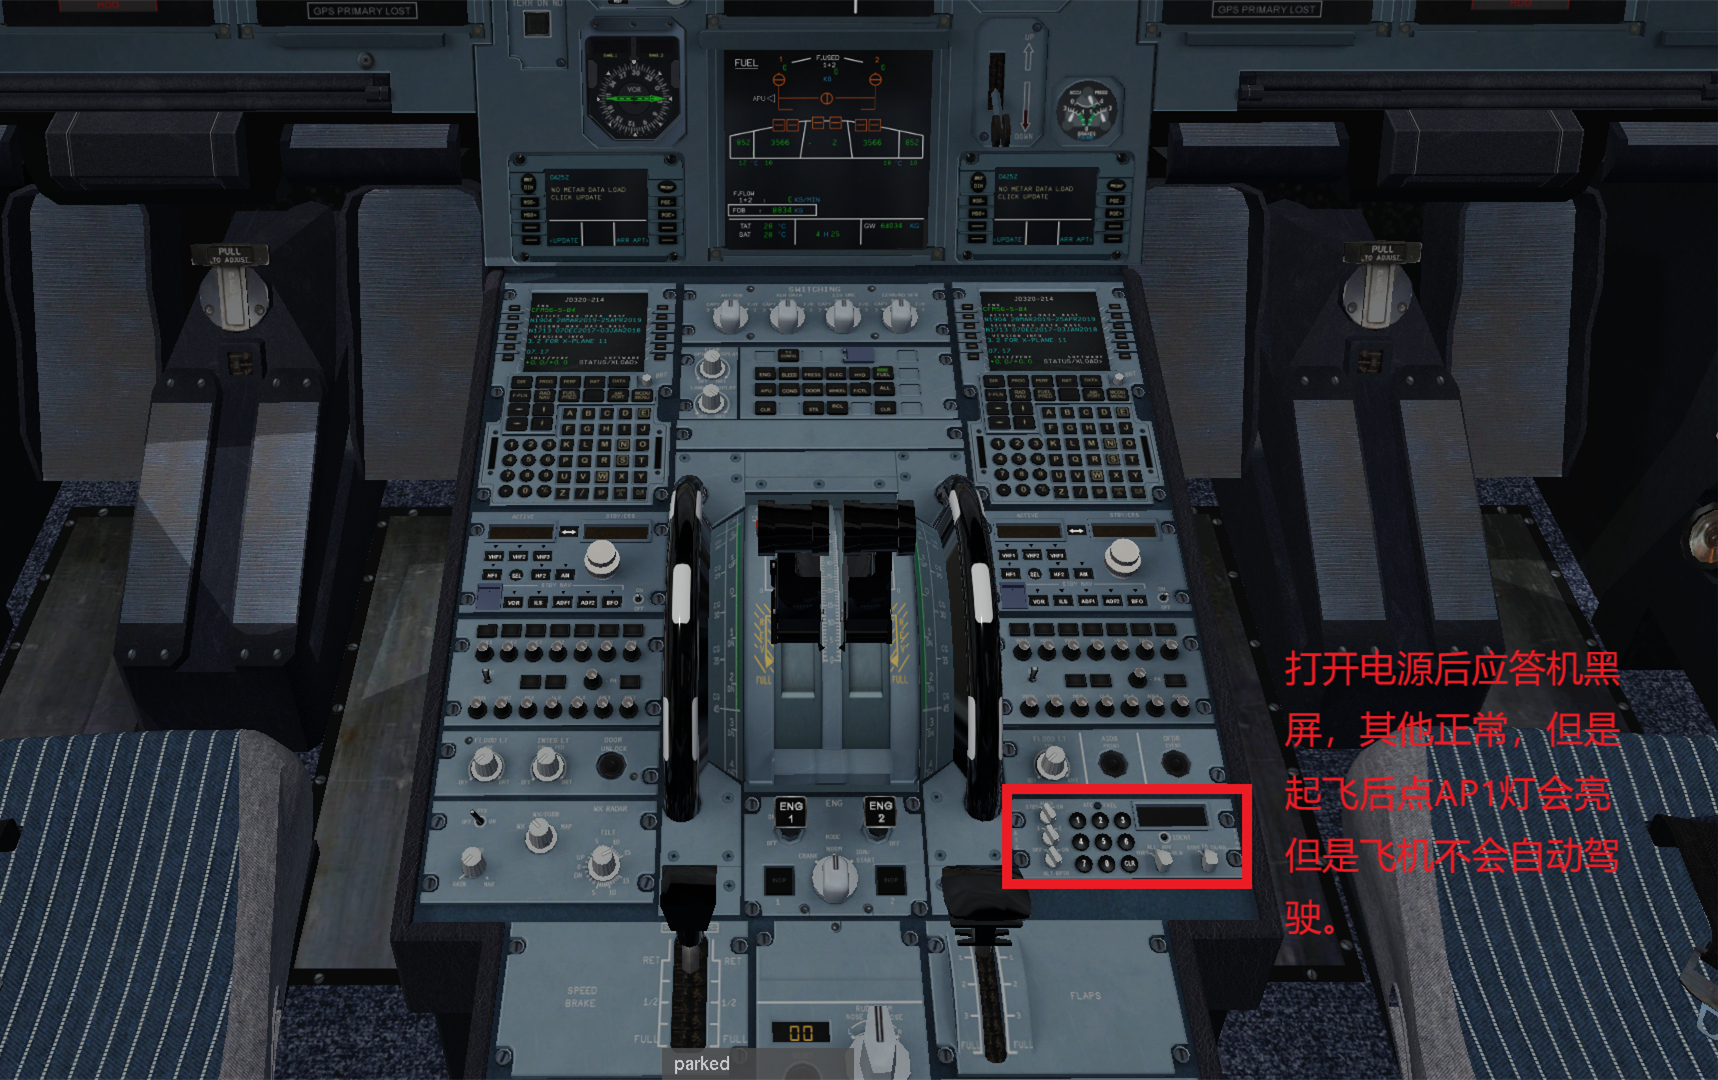 JARD A320  不能导航应答机黑屏的解决办法-8289 